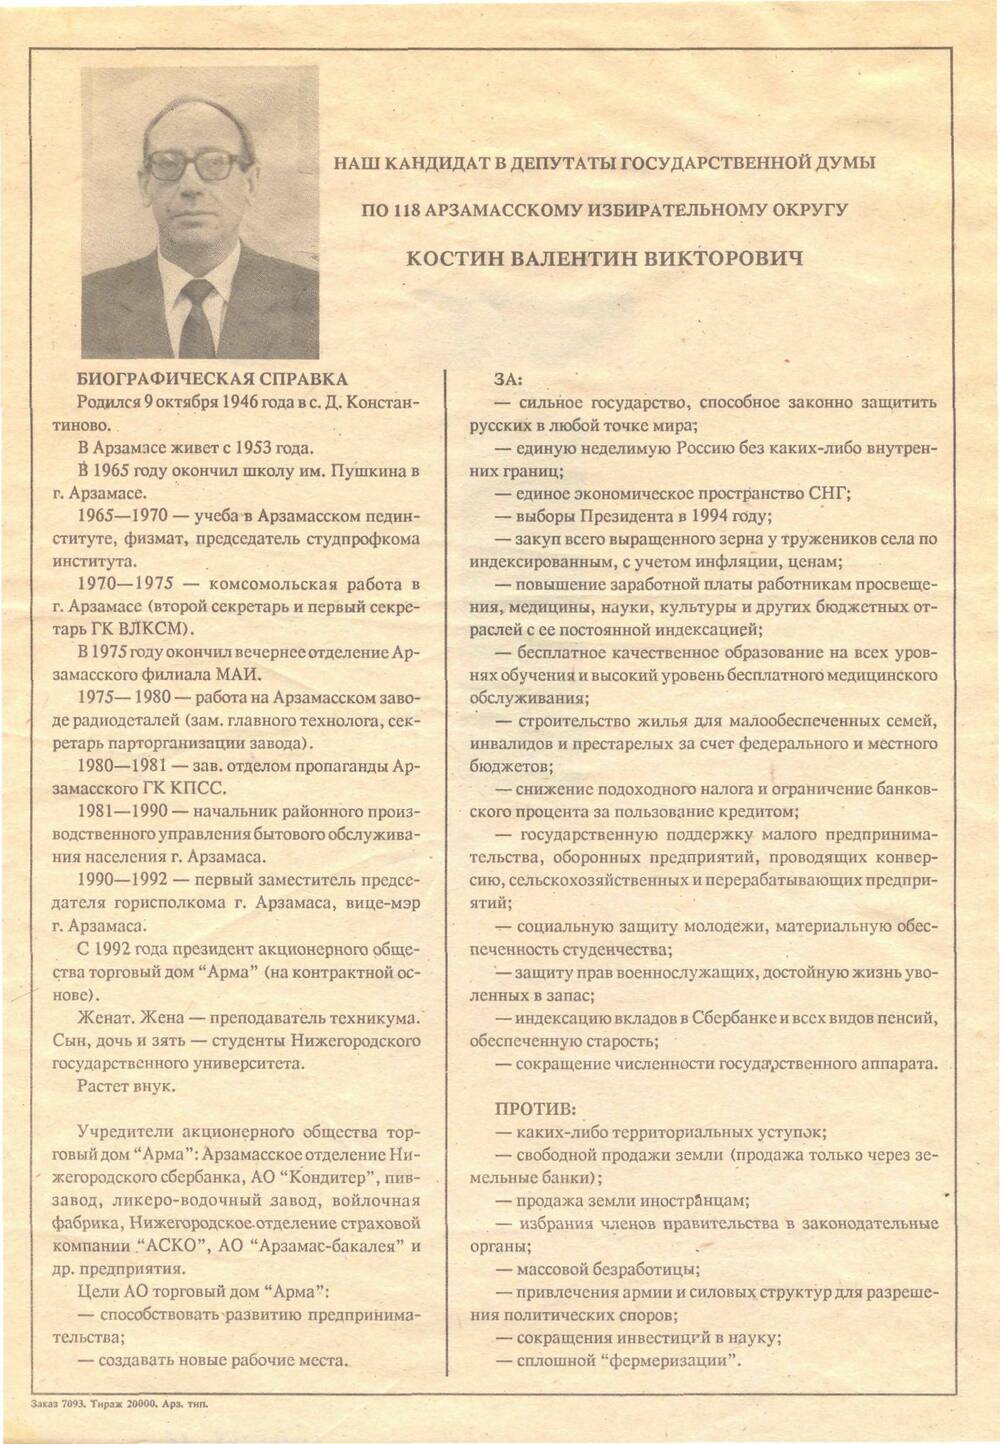 Избирательная листовка Костин В.В.